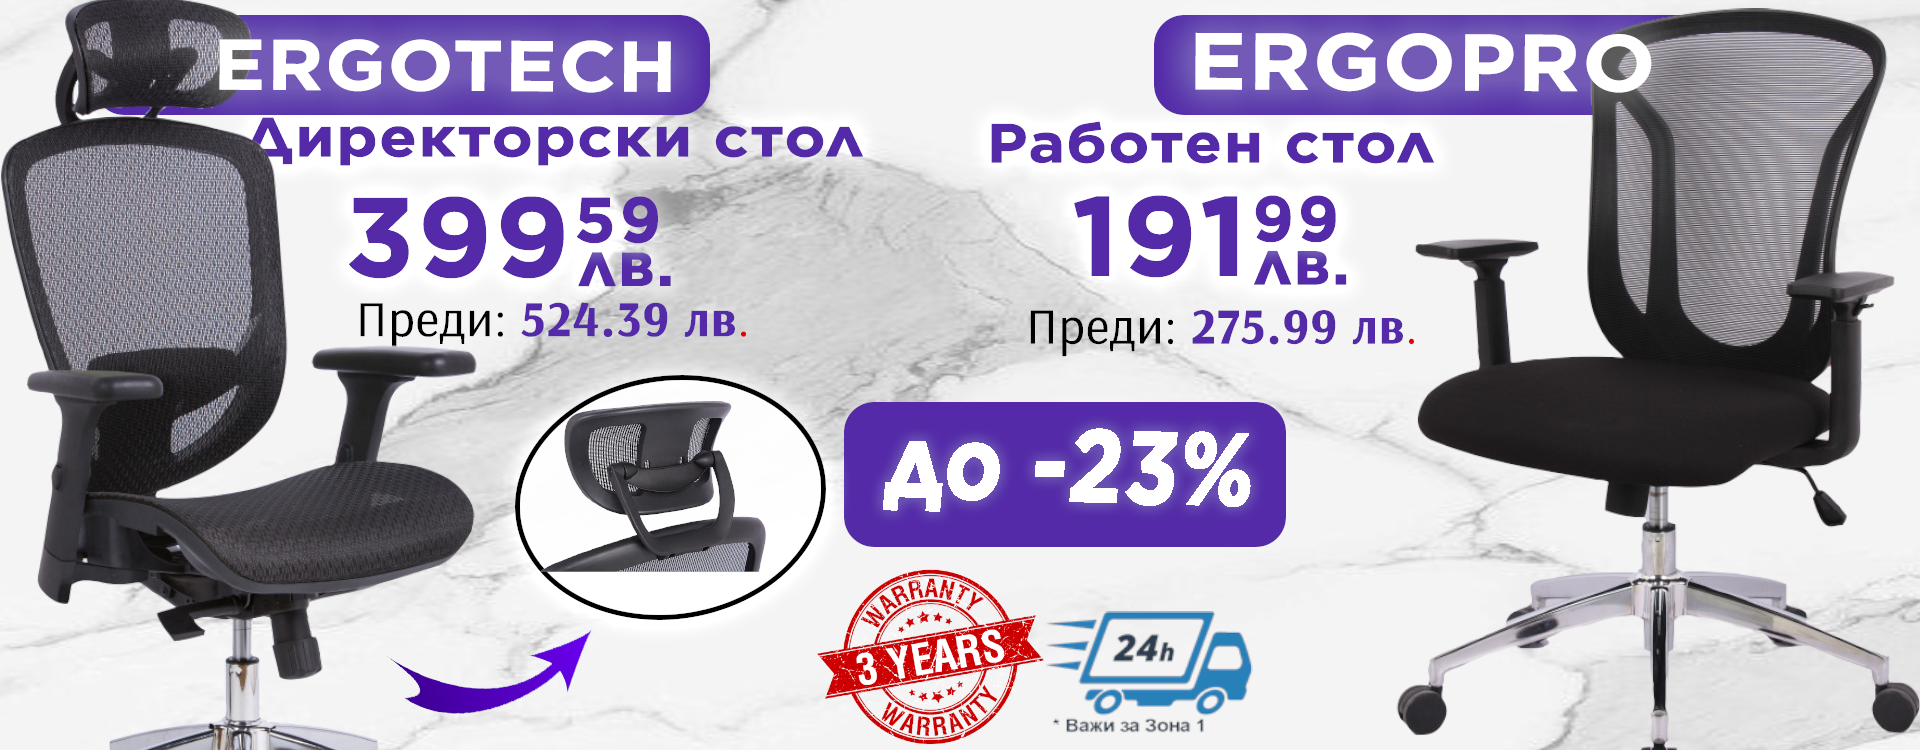 Директорски стол Ergotech и работен стол Ergopro намаление до -23%